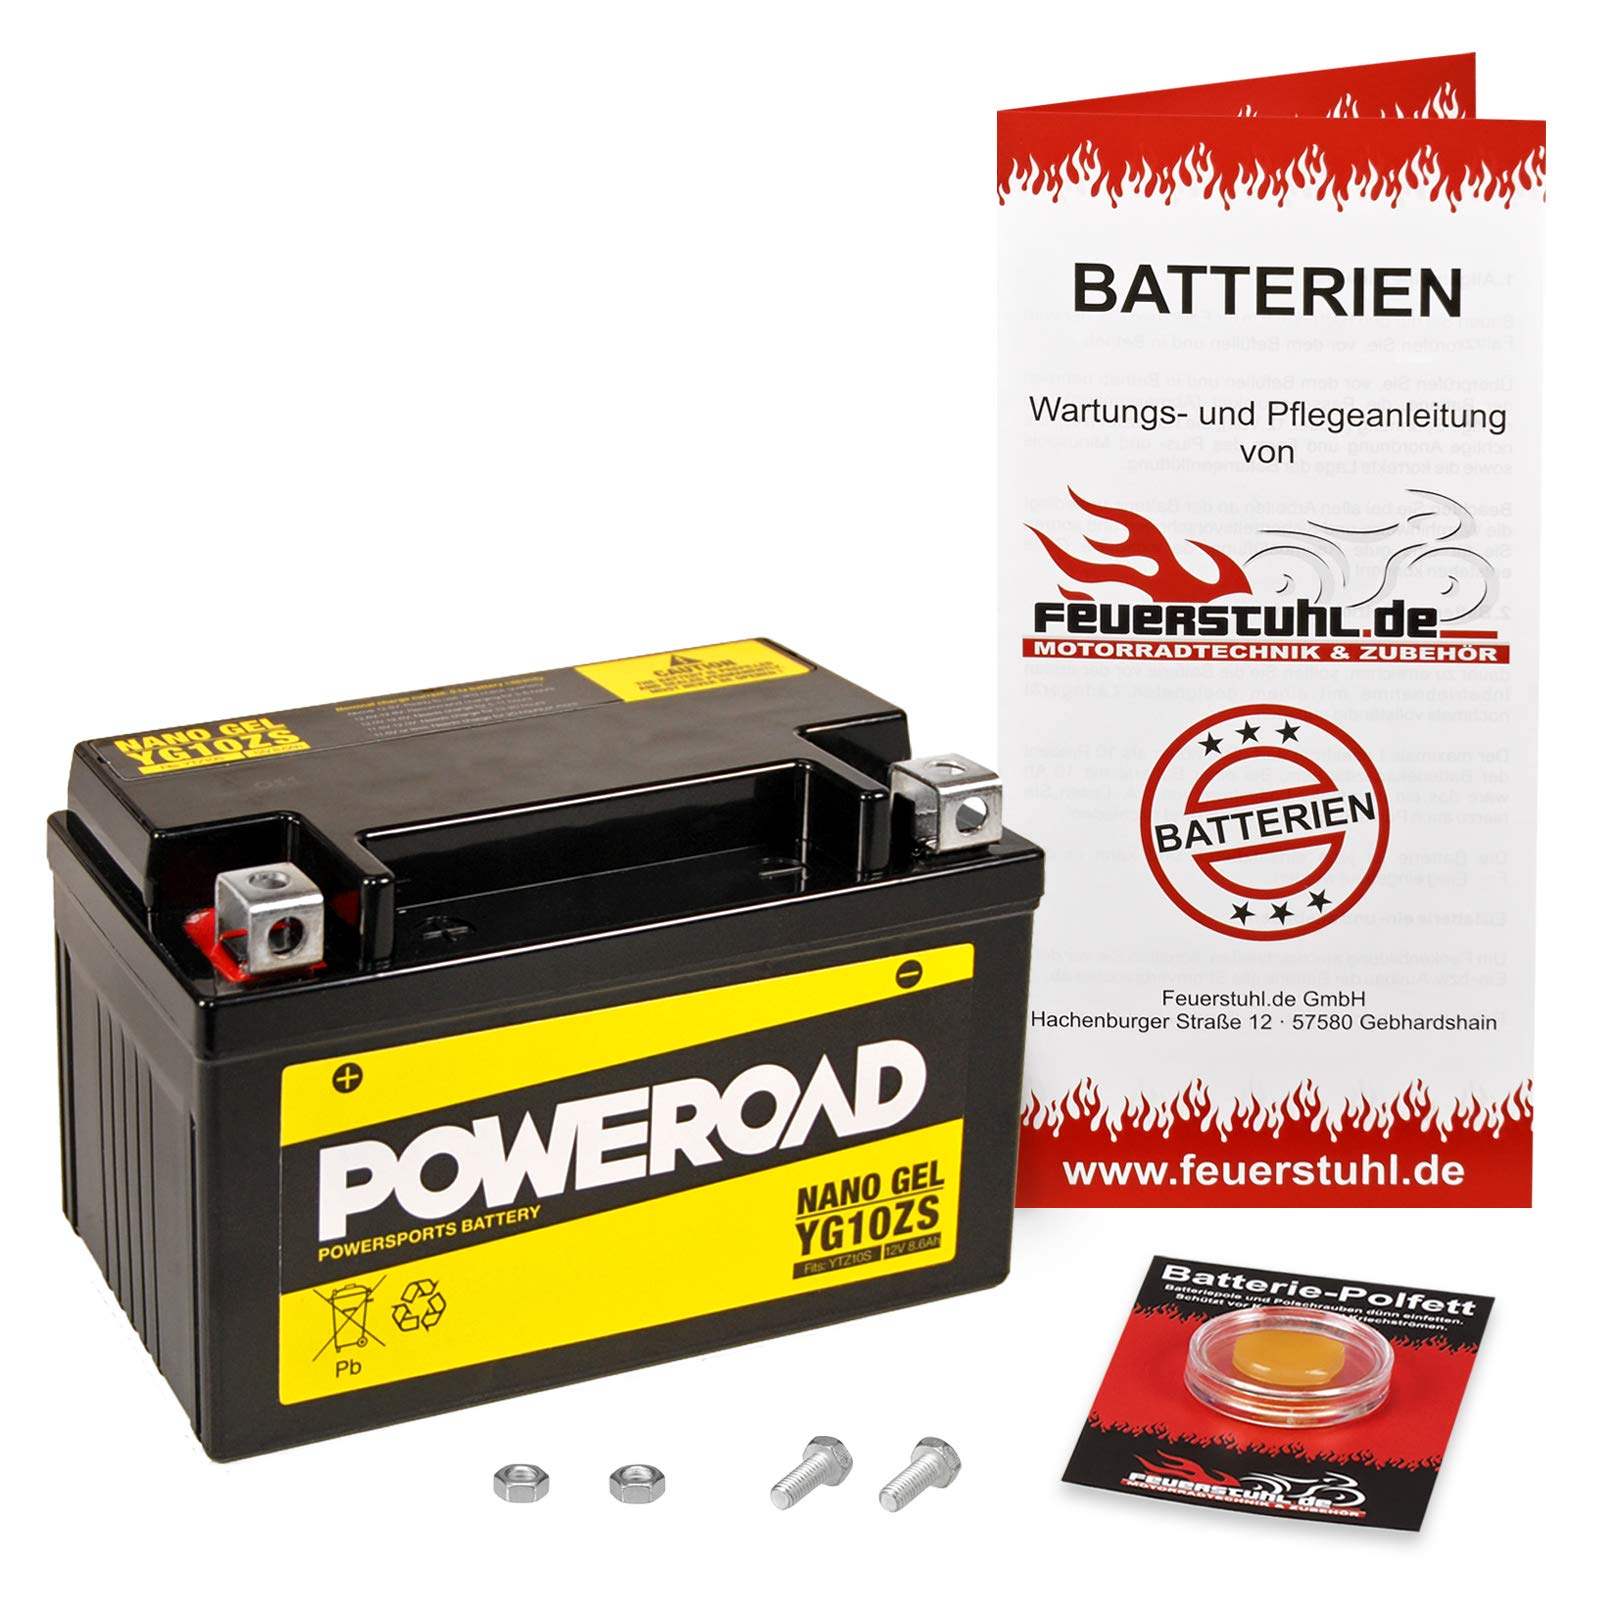 Gel-Batterie für Honda CB 1000 R (SC60) wartungsfrei, einbaufertig, startklar, inkl. 7,50€ Pfand von Feuerstuhl.de GmbH